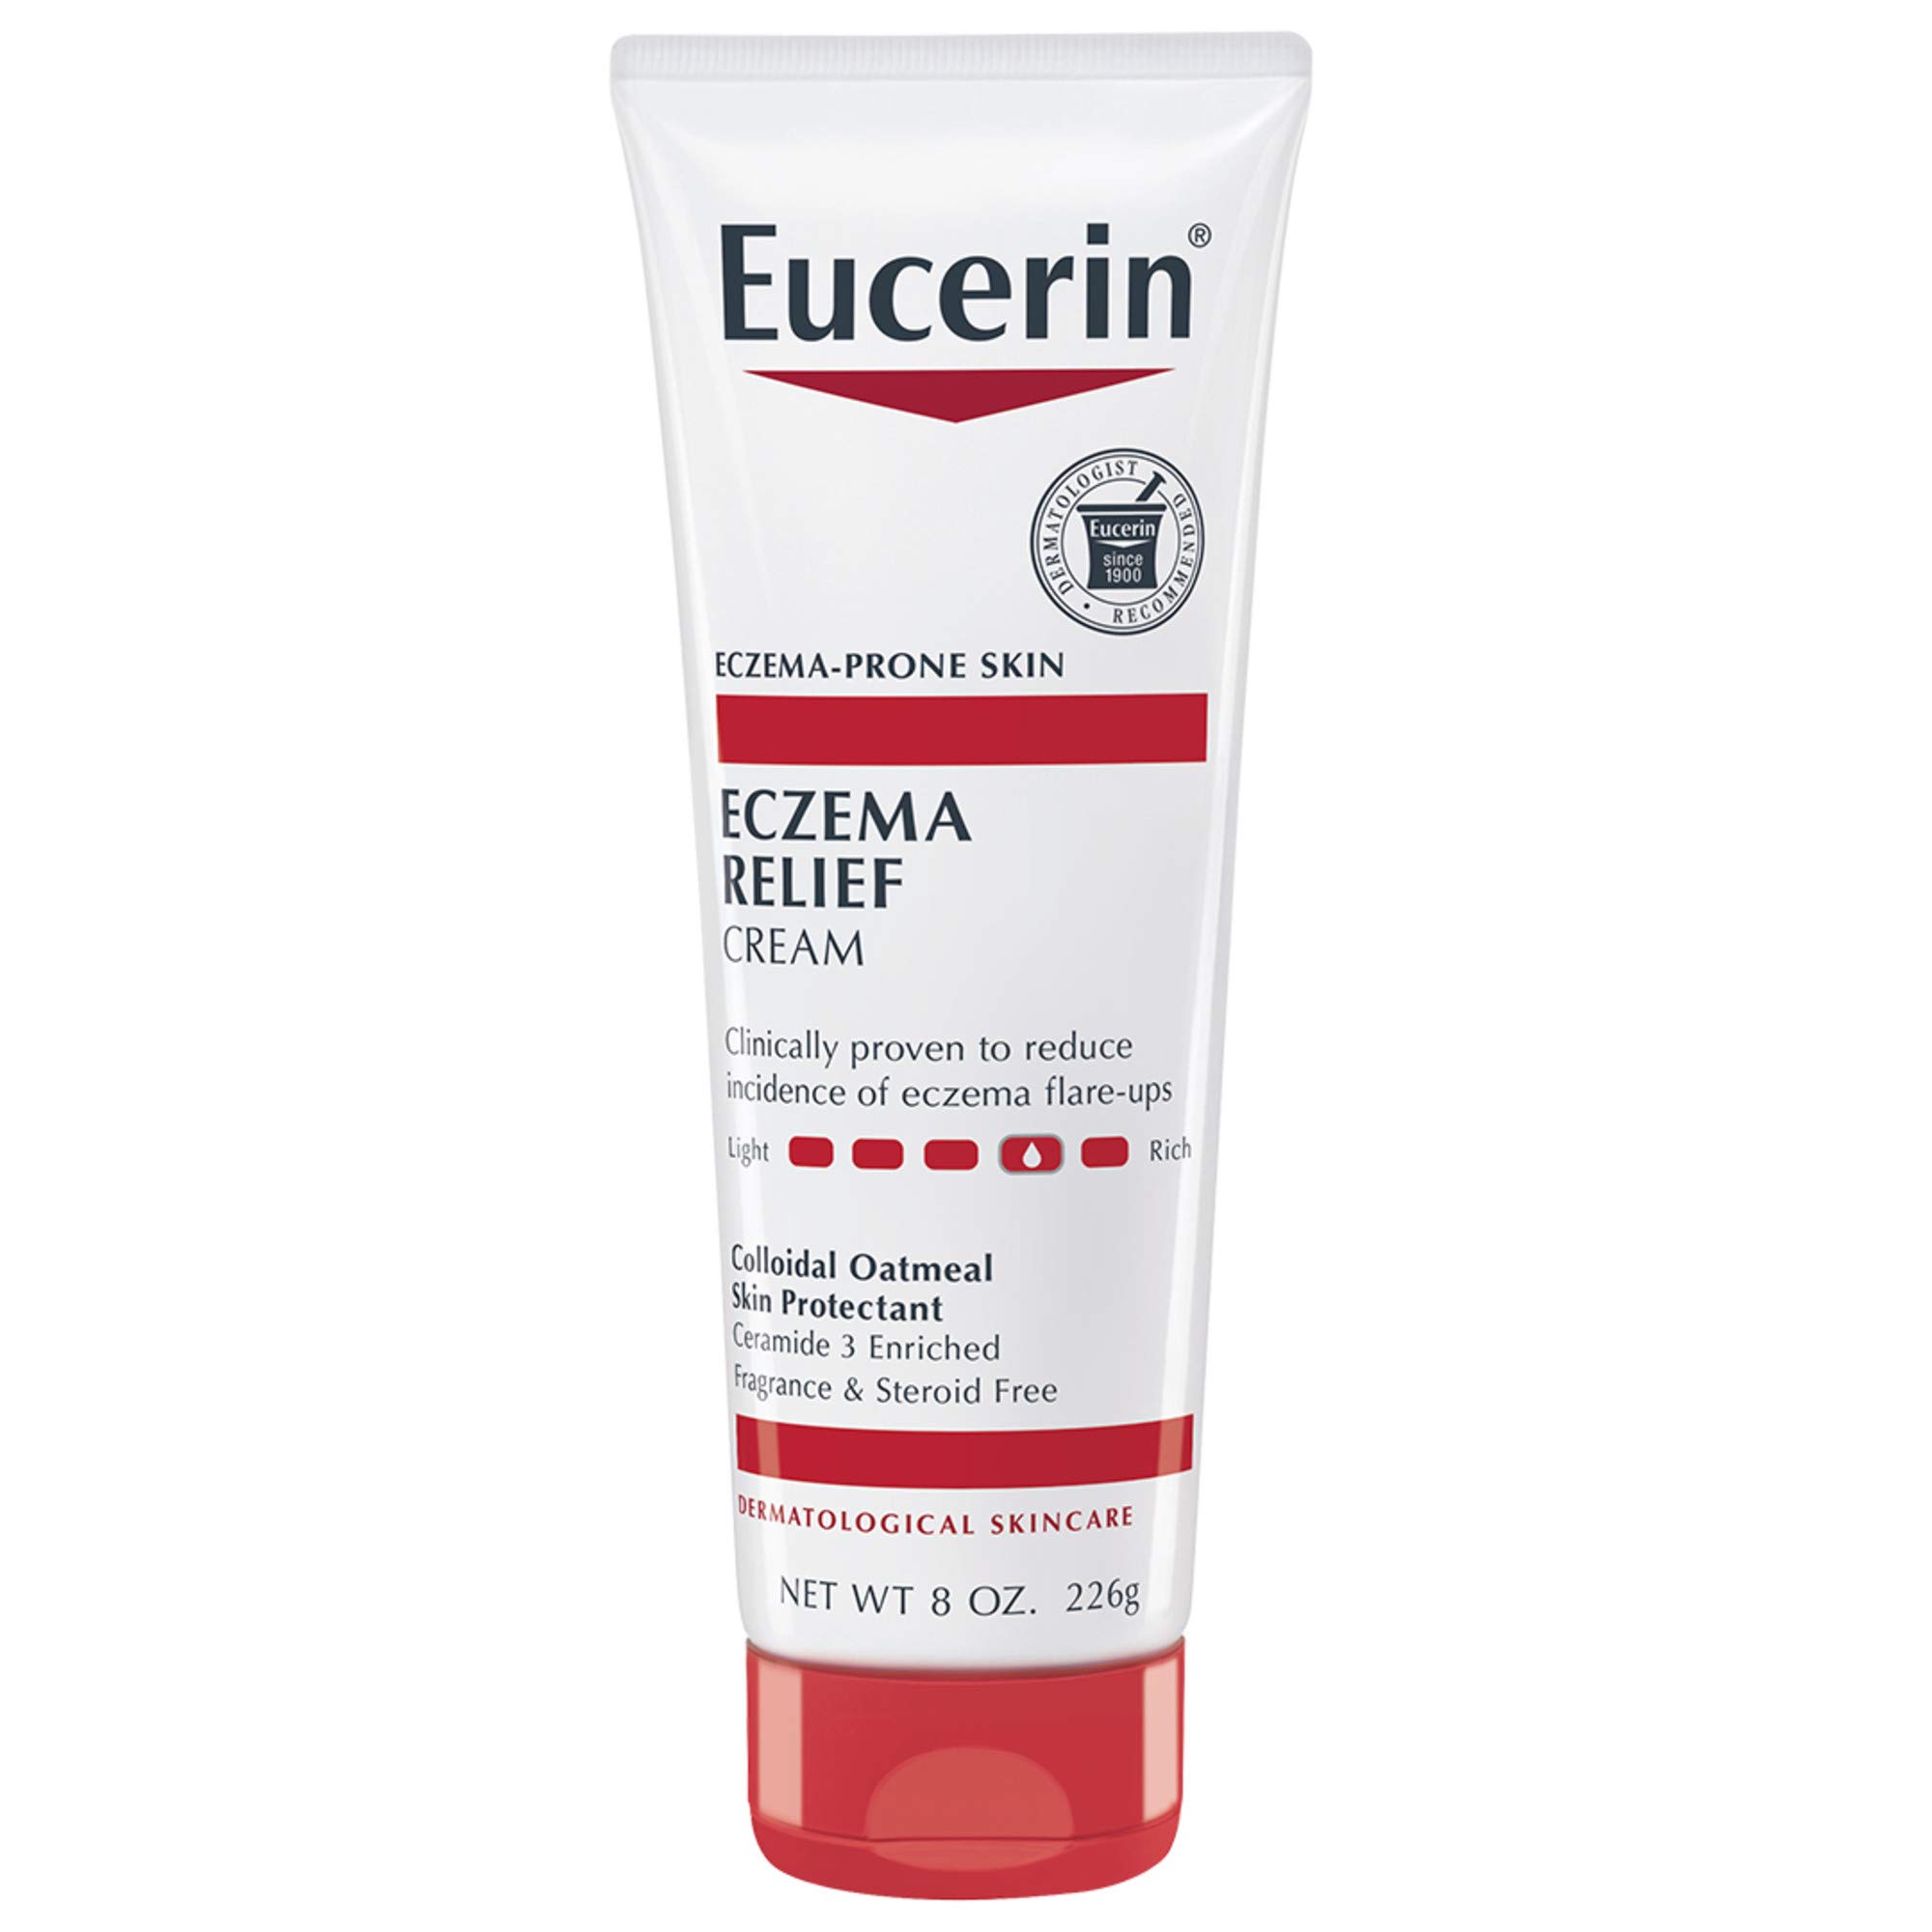 Có thể mua Eucerin Eczema Relief ở đâu và giá cả như thế nào?